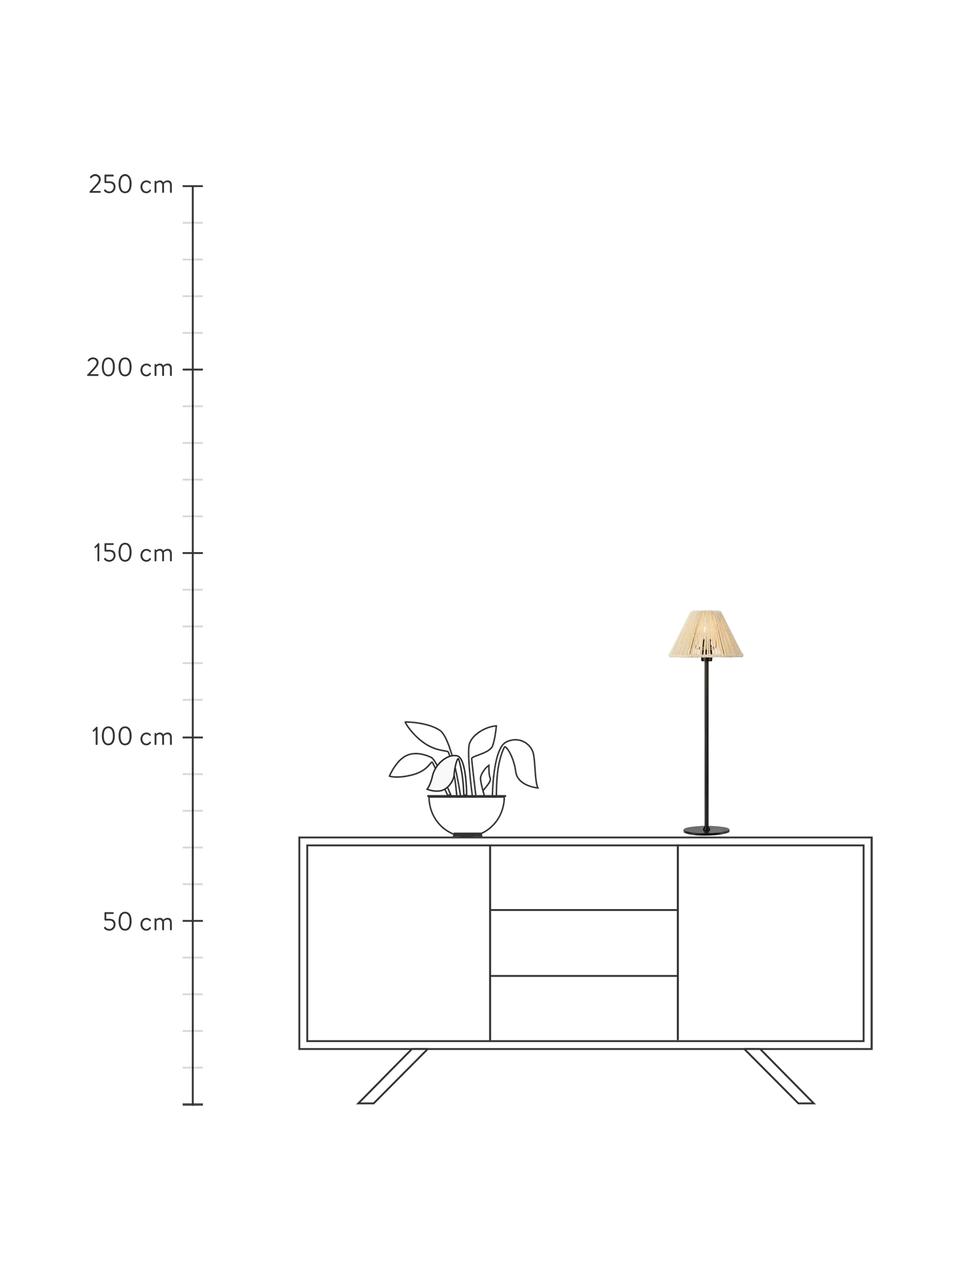 Grosse Tischlampe Corda mit Geflecht, Lampenschirm: Papier-Geflecht, Beige, Schwarz, Ø 20 x H 62 cm